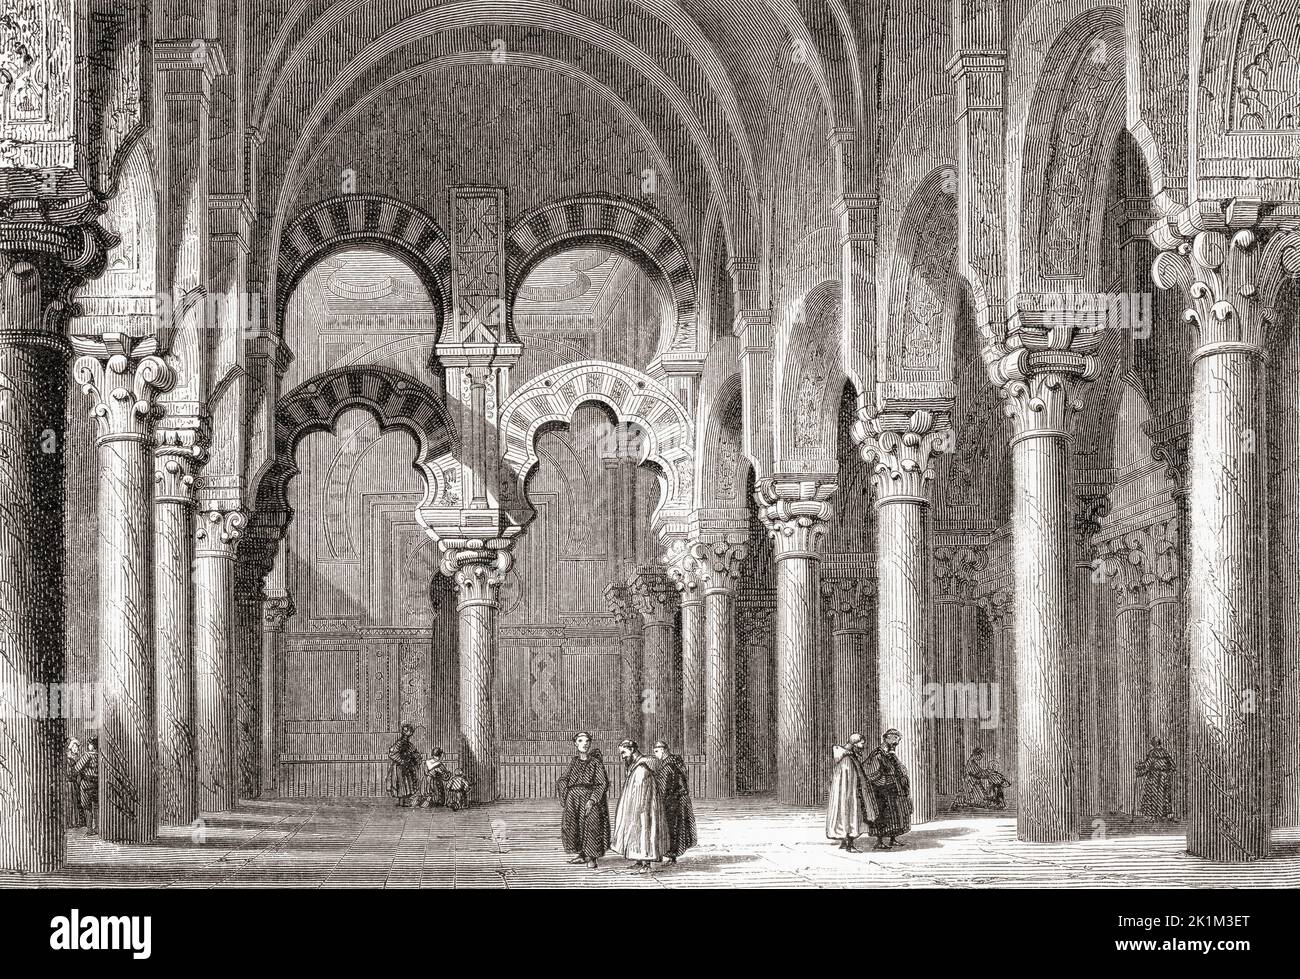 Interior de la Mezquita-Catedral de Córdoba, Córdoba, Andalucía, España, visto aquí en el siglo 19th. De los estilos arquitectónicos moriscos y renacentistas, la construcción comenzó en 785 (como una mezquita) y la última gran adición como una catedral se completó en el siglo 16th. De Les Plus Belles Eglises du Monde, publicado en 1861. Foto de stock